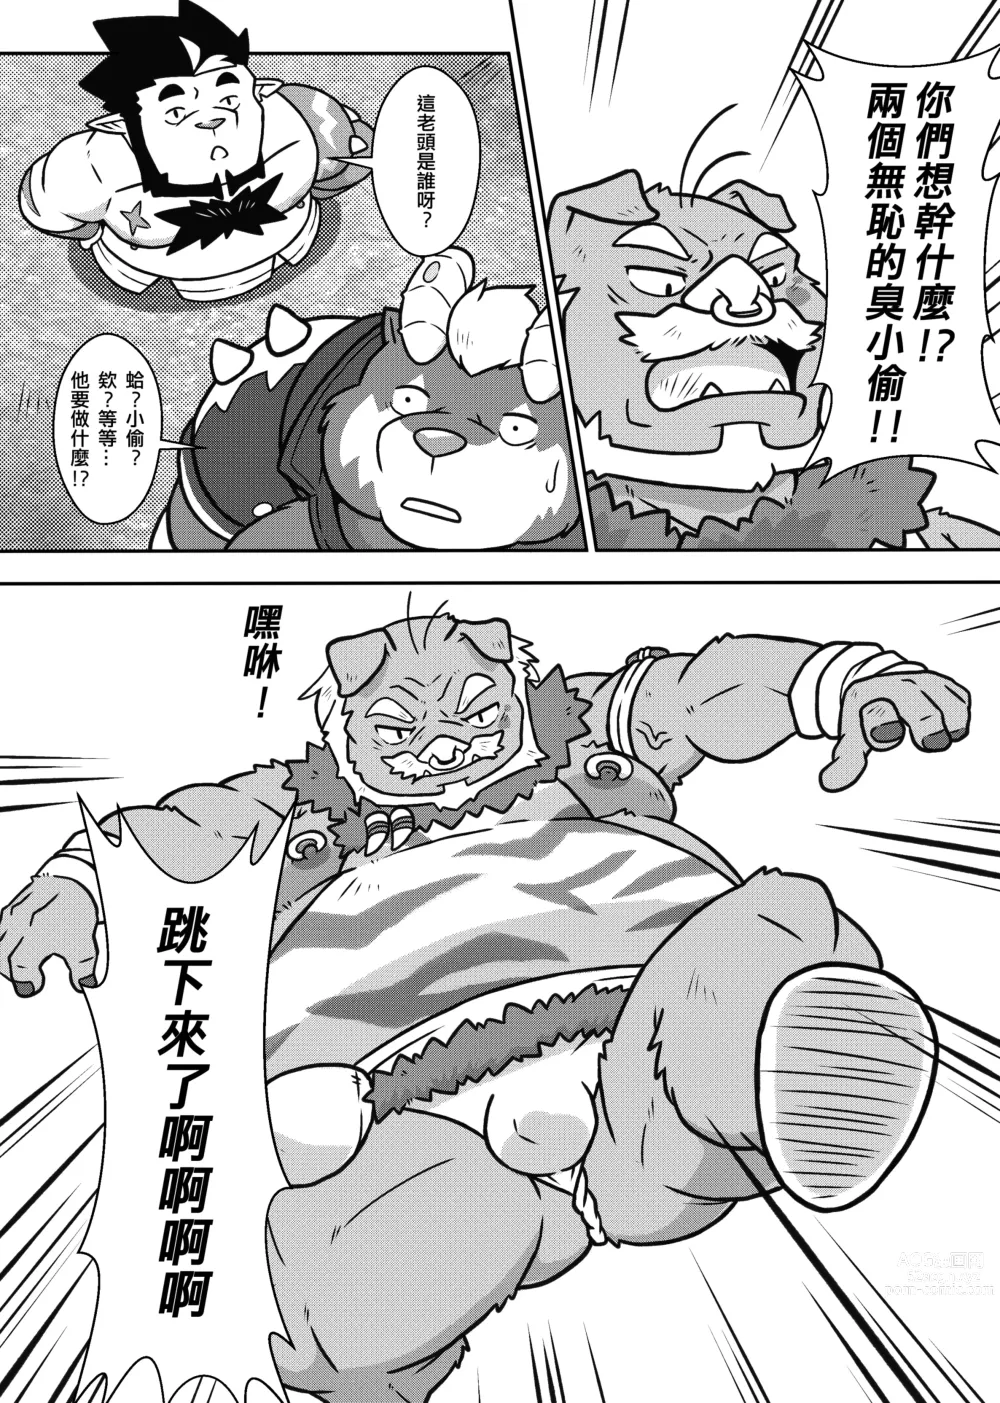 Page 14 of doujinshi 勇者的大小只有魔王塞得下2